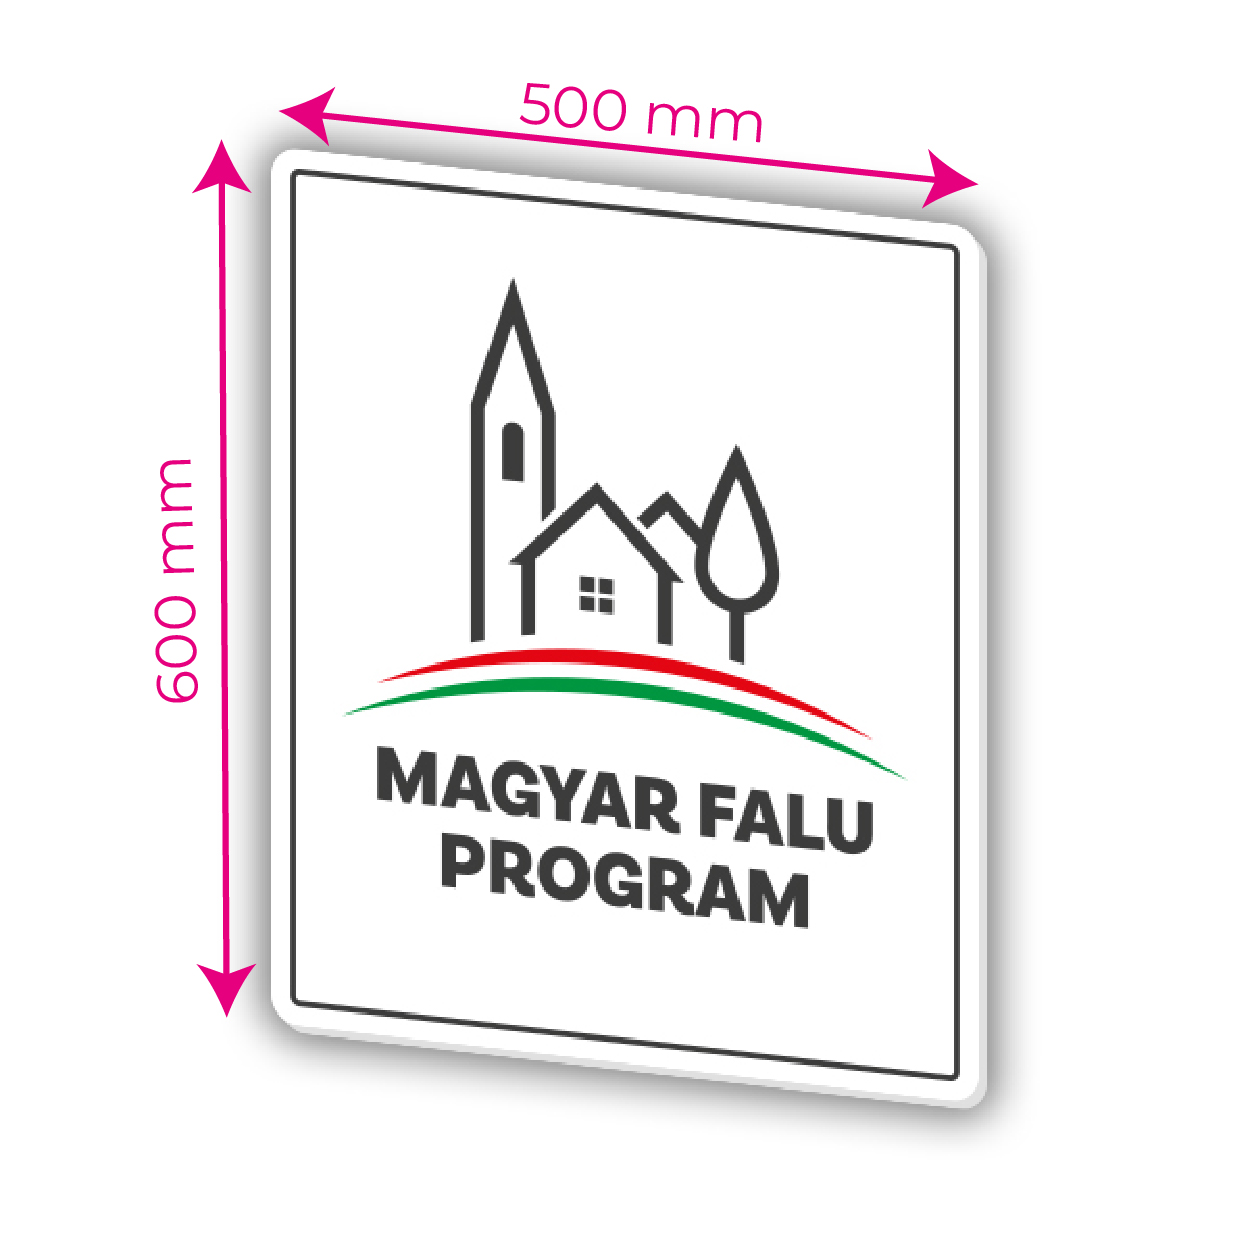 Magyar falu program tábla